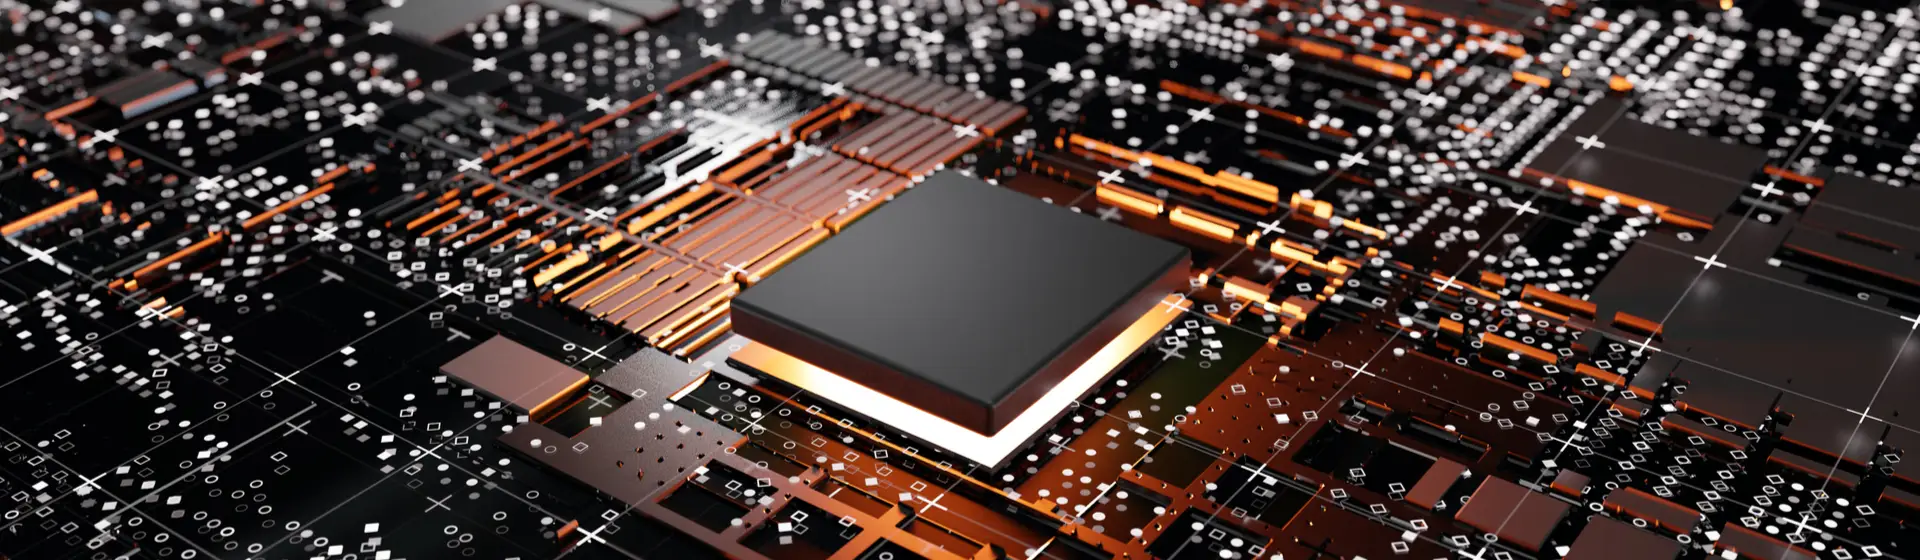 Processador i7: entenda as CPUs da Intel e veja bons modelos